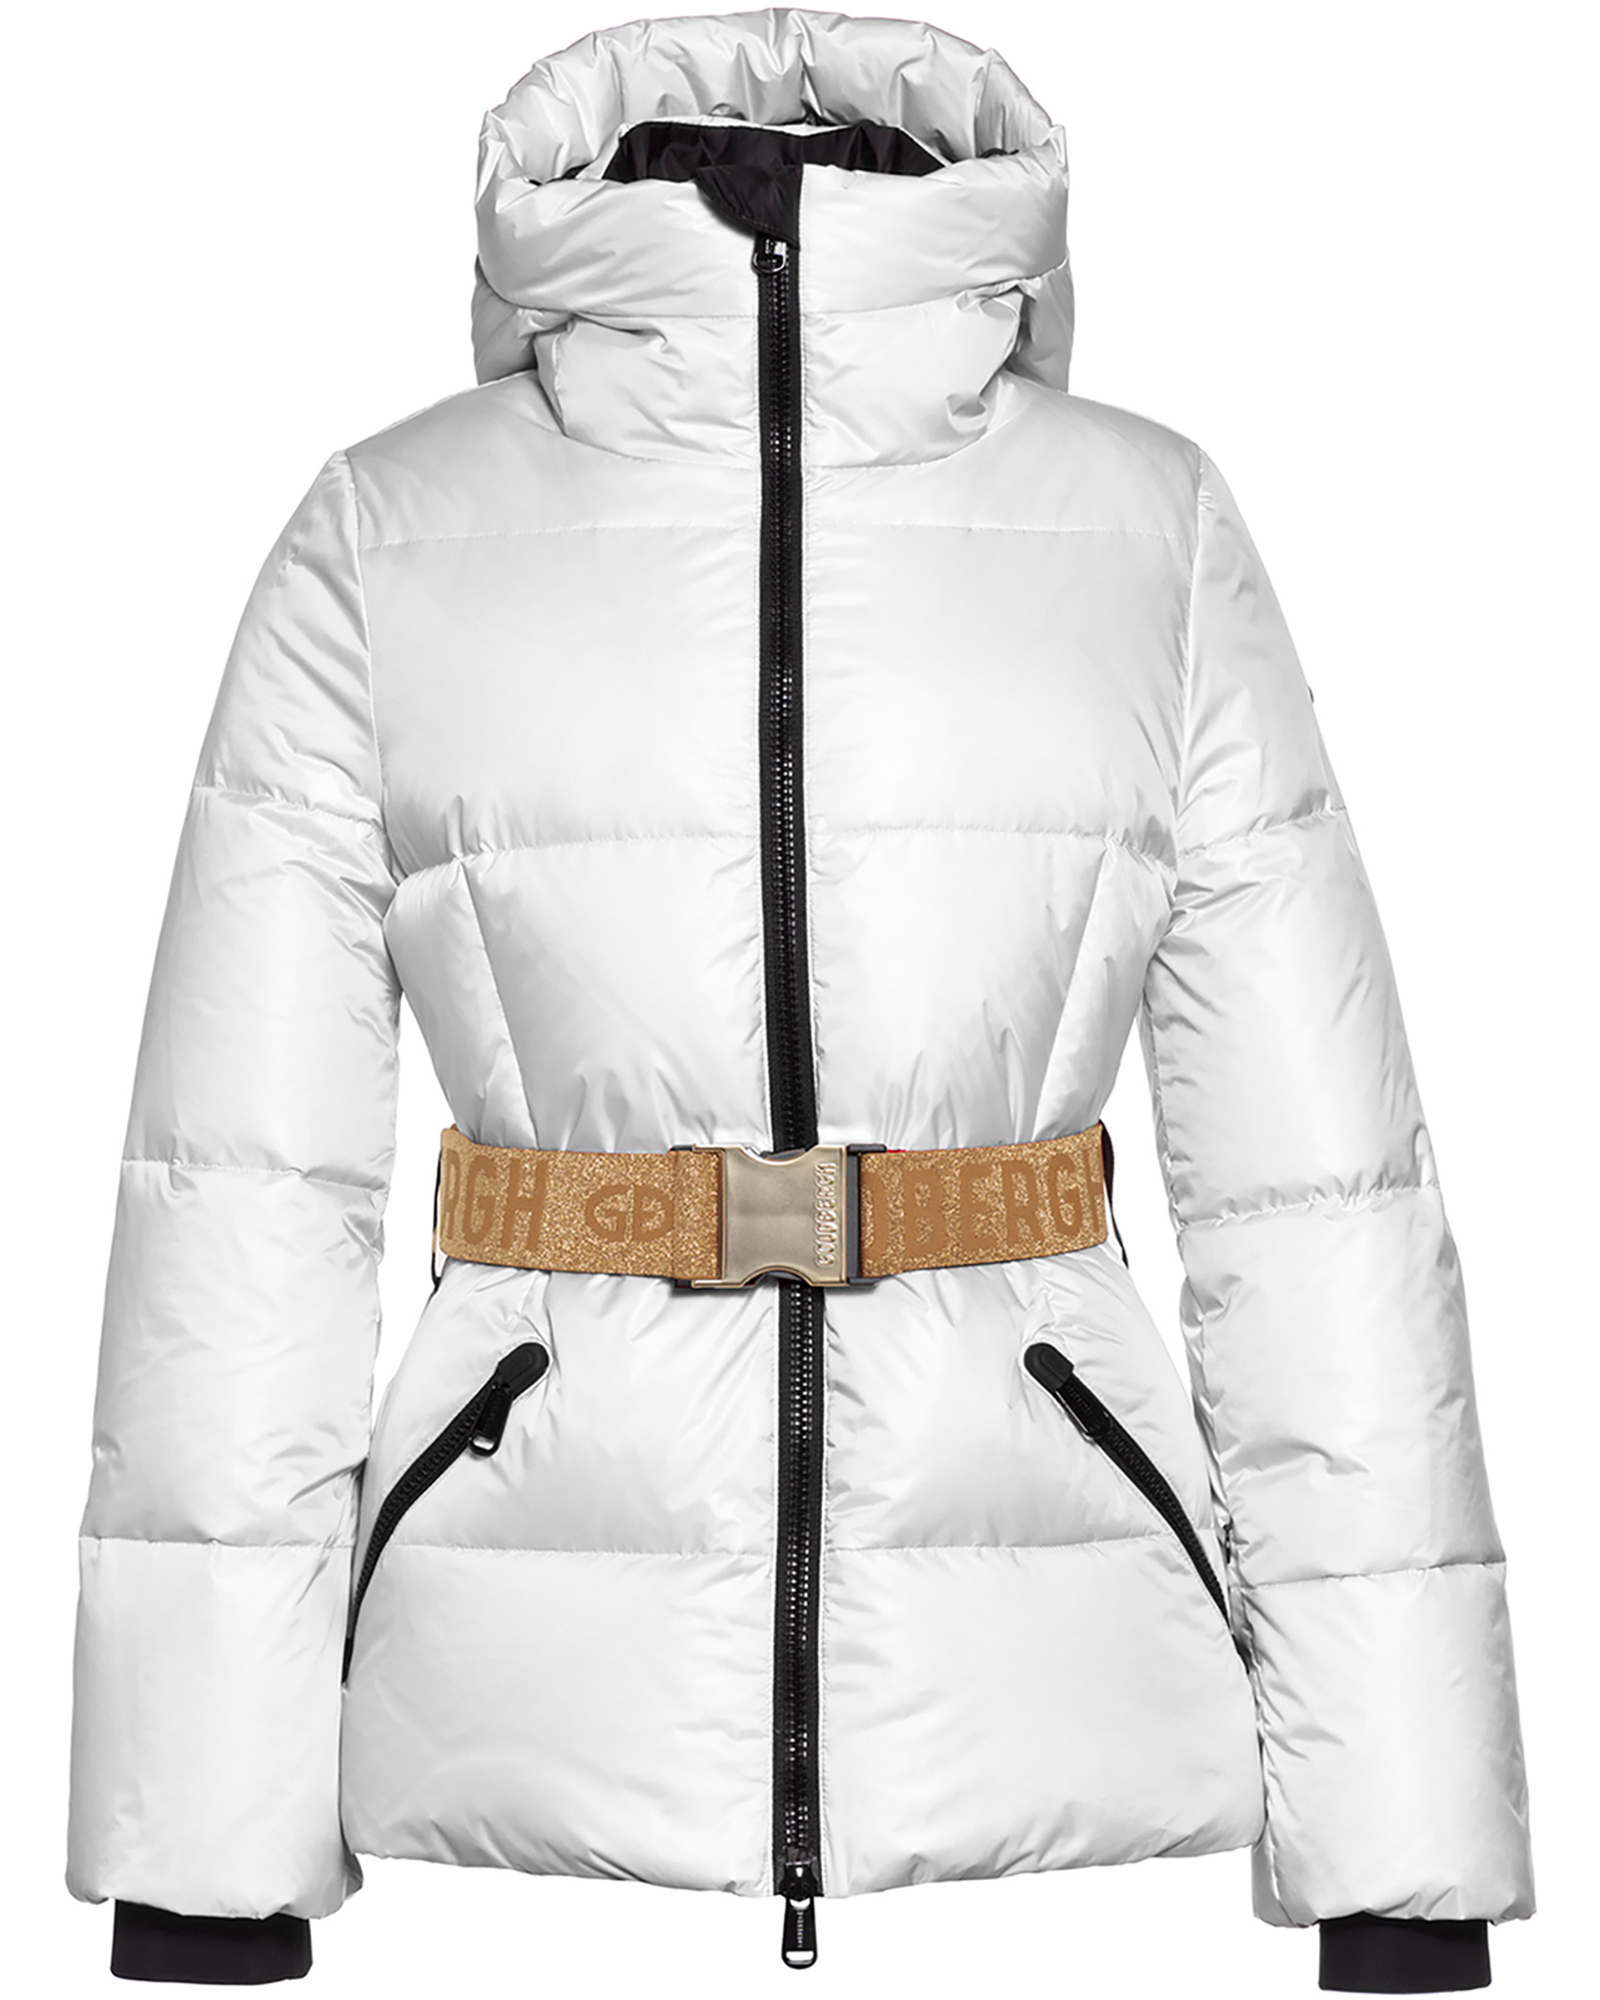 Goldbergh Snowmass Women’s Jacket - White/Gold 14